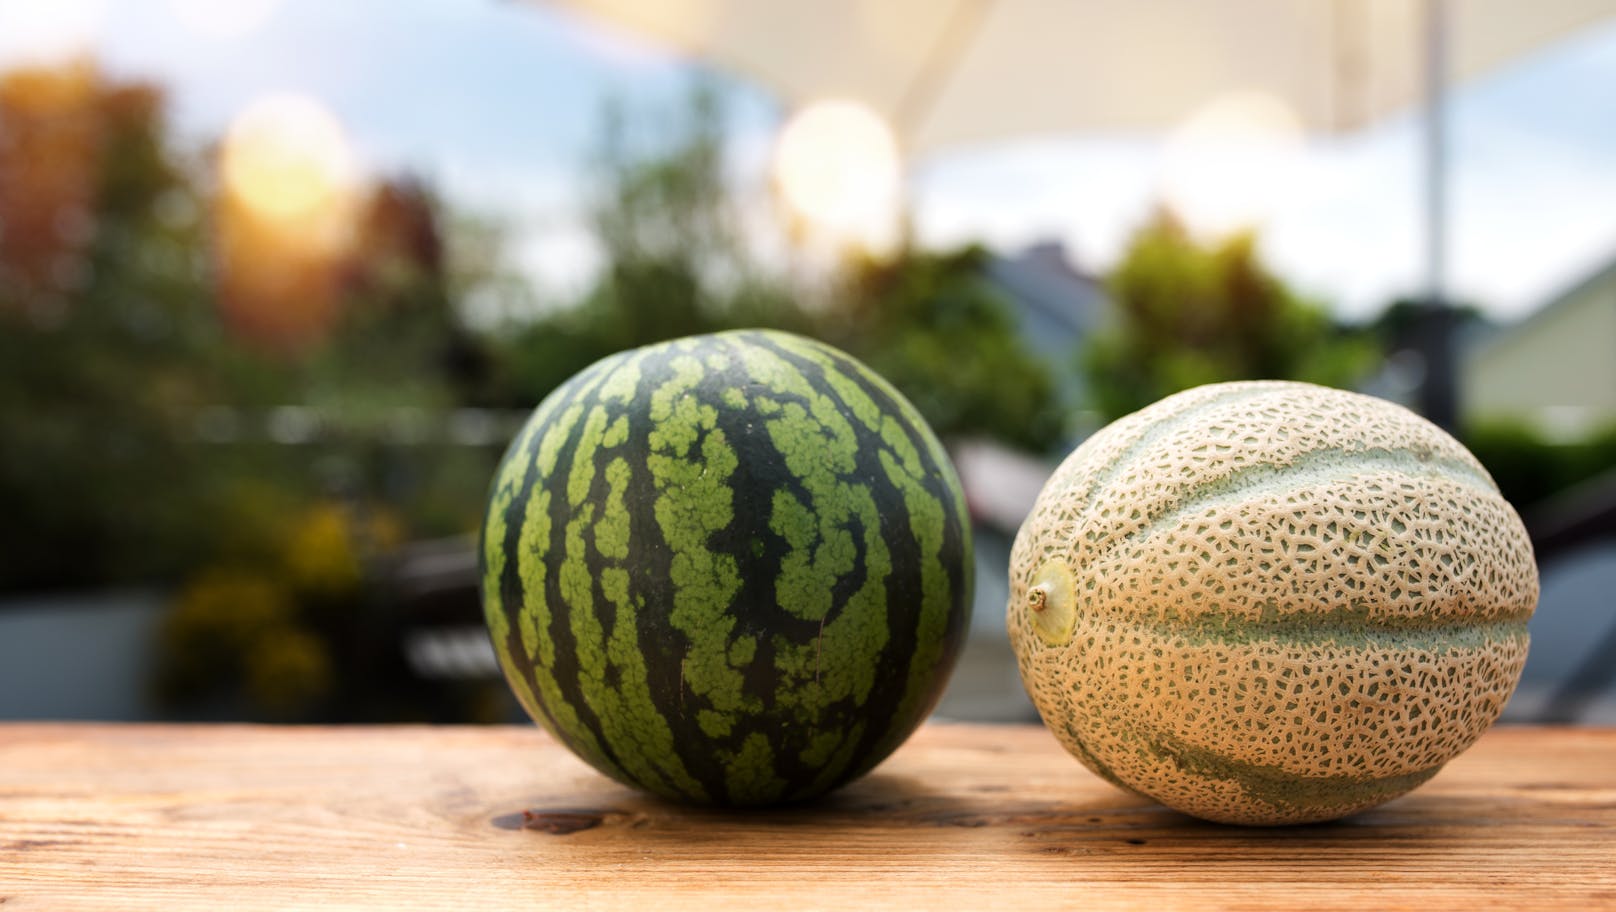 <strong>Melonen</strong>: Die meisten Melonen, die wir kaufen, sind nicht samenfest. Das bedeutet, dass zwar ziemlich sicher etwas aus dem Samen wächst, es sieht aber vermutlich nicht so aus, wie die Melone, die du gekauft hast – und schmeckt wohl auch nicht gleich. Eine Melone zu züchten ist aber auch sonst etwas komplizierter: Der Samen sollte einige Wochen in einem gewächshausartigen Umfeld keimen können, bevor er frühstens ab Mai in den Boden verpflanzt werden kann. Dort wächst er dann rund 80 Tage weiter.